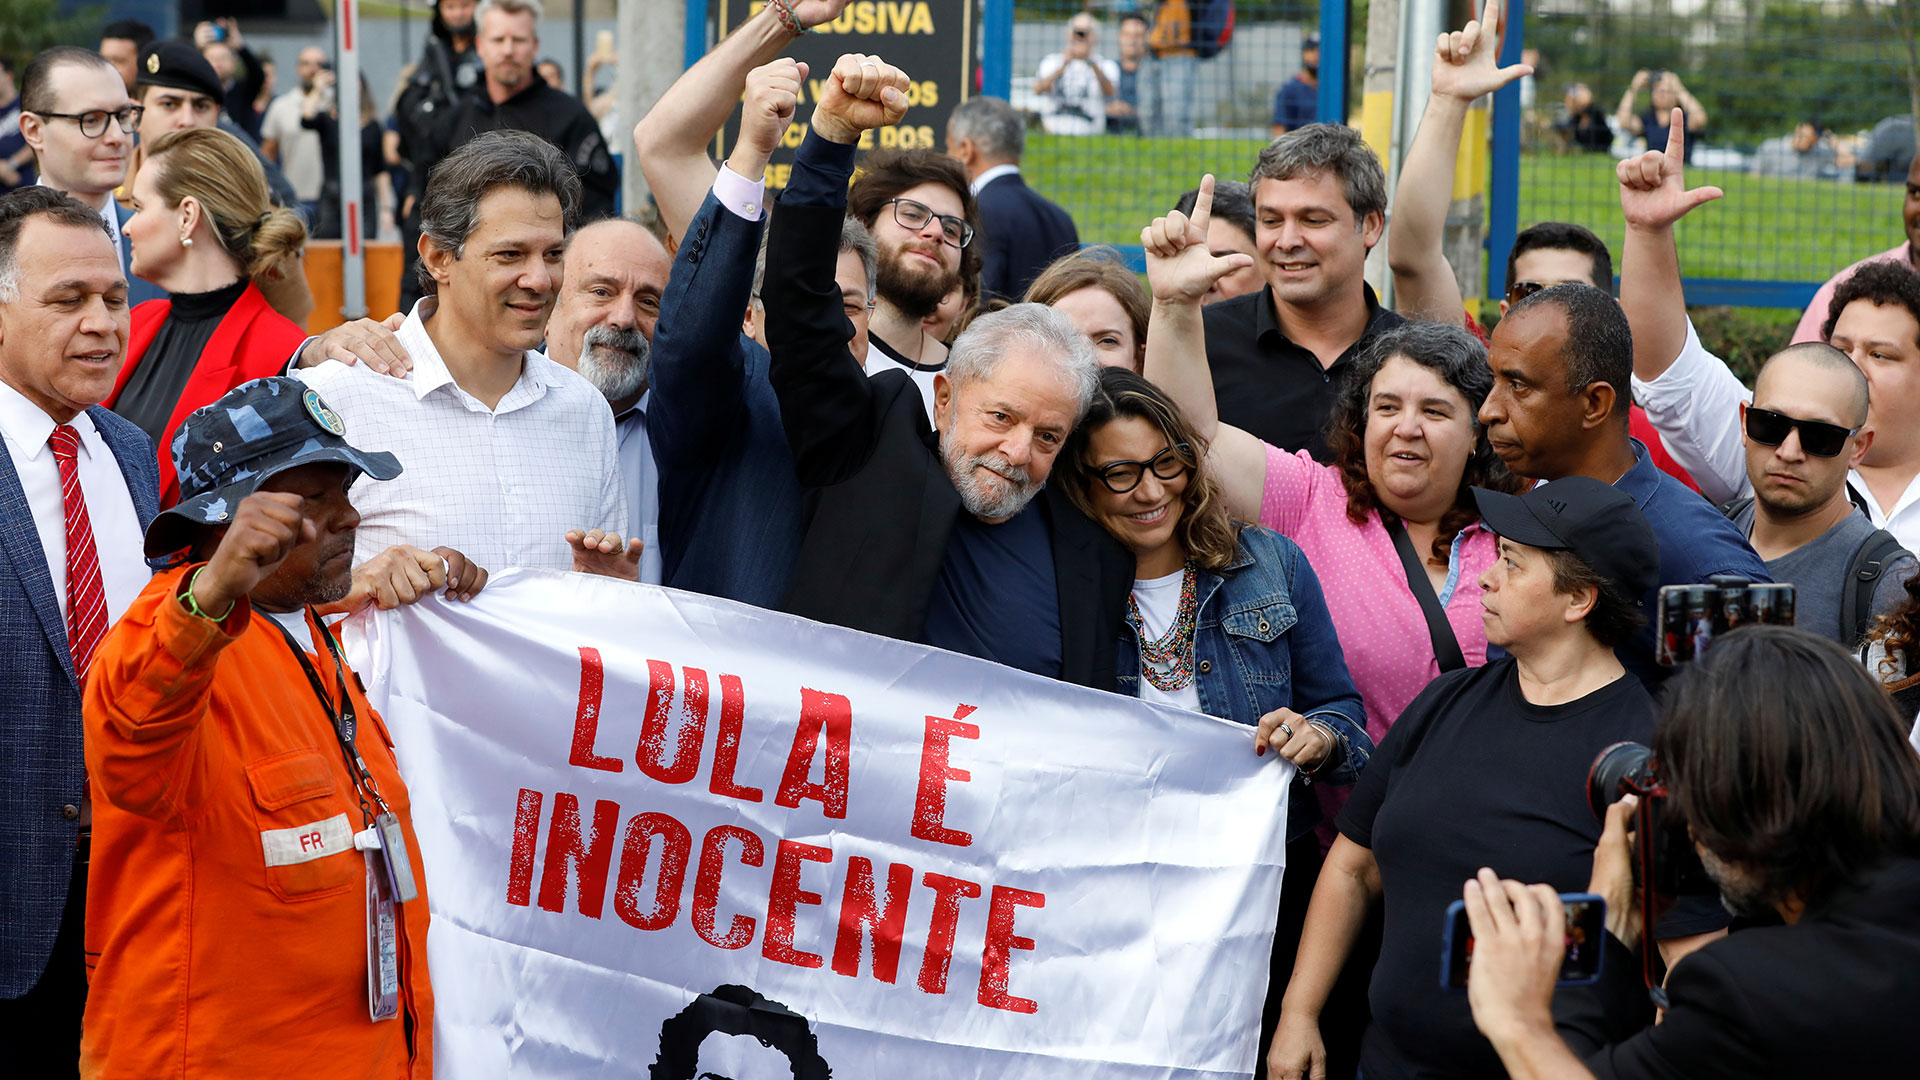 El encarcelamiento de Lula terminó a finales de 2019 y siguió la batalla legal para que fuera exonerado, con lo cual es favorito para volver a la presidencia de Brasil (Foto: Reuters)